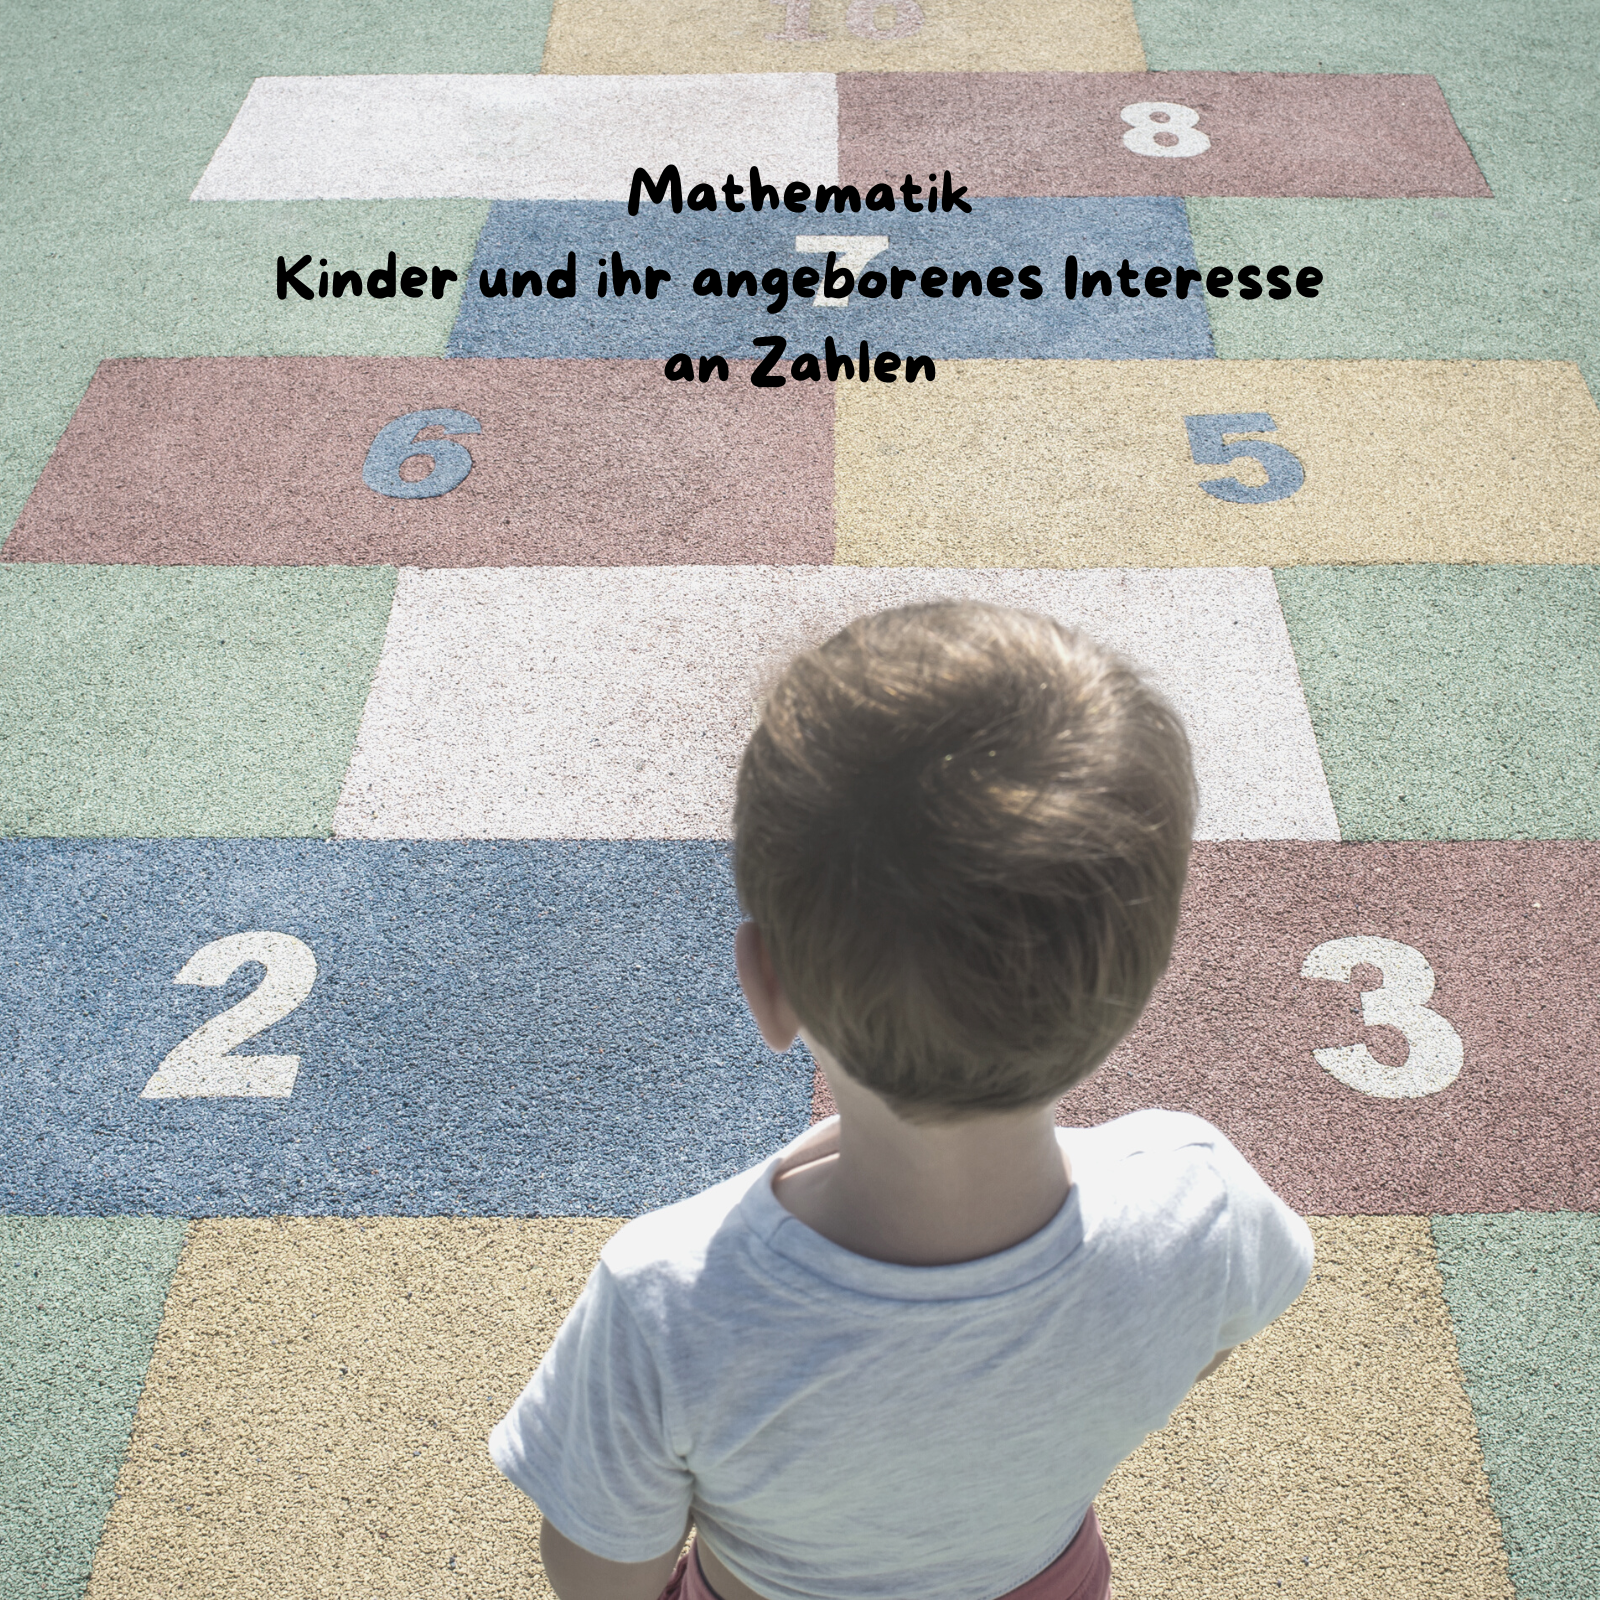 Mathematik - jedes Kind hat ein angeborenes Interesse an Zahlen!